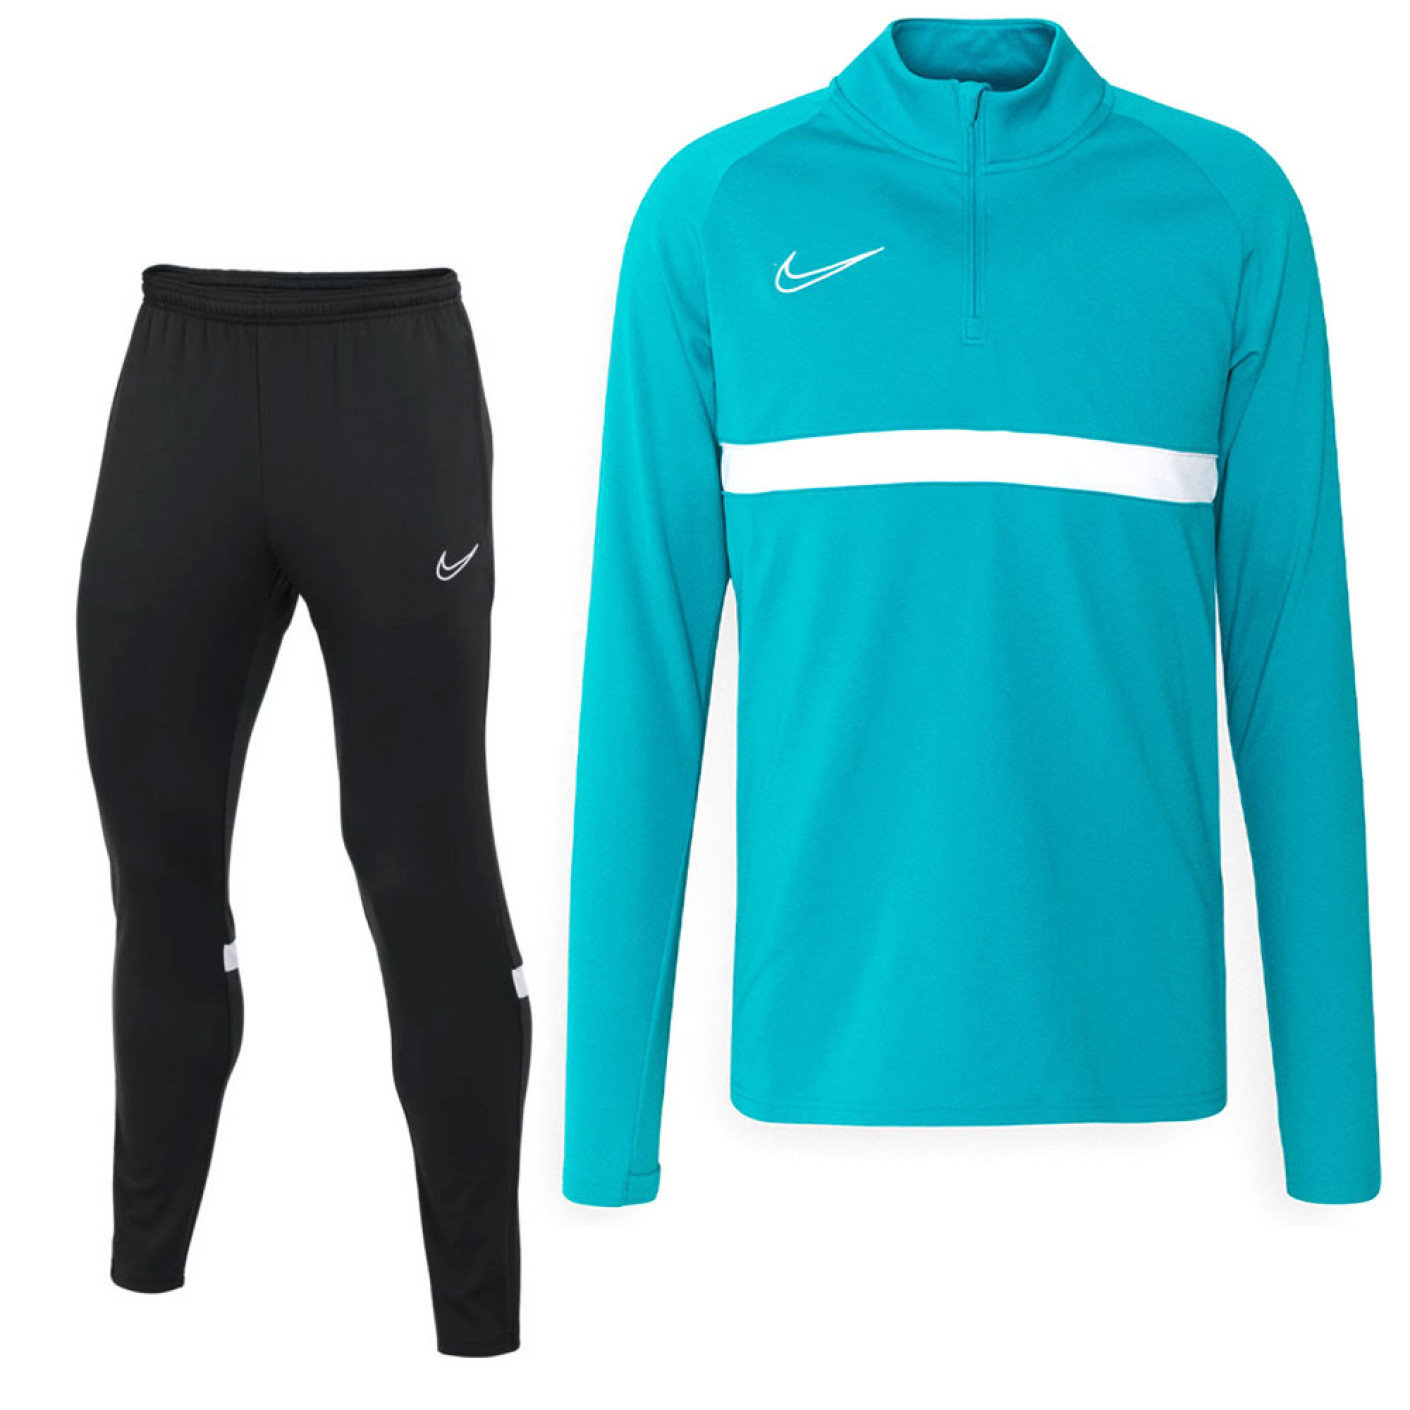 Nike Academy Trainingspak Turquoise Zwart